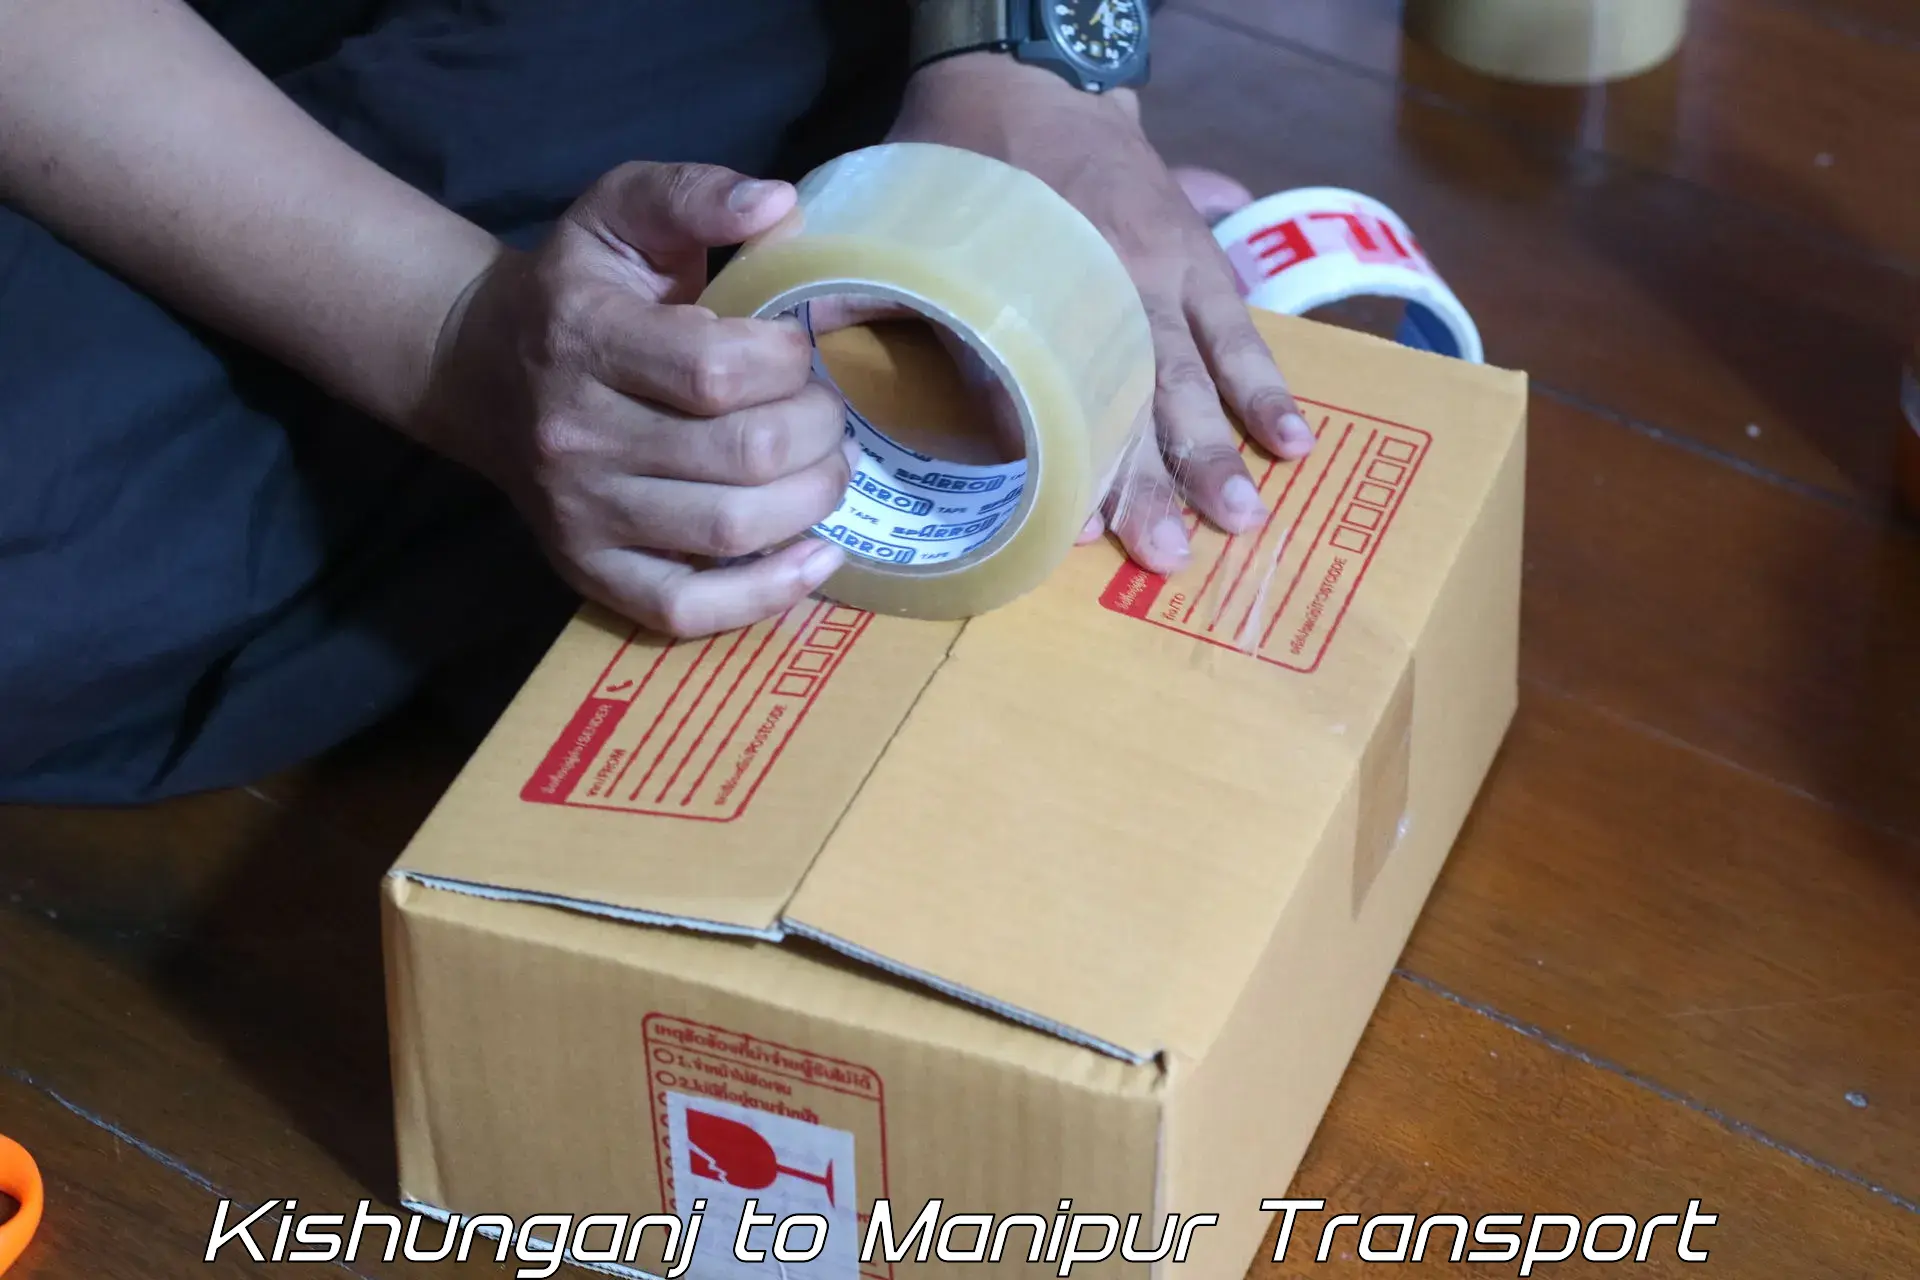 Daily parcel service transport Kishunganj to Moirang